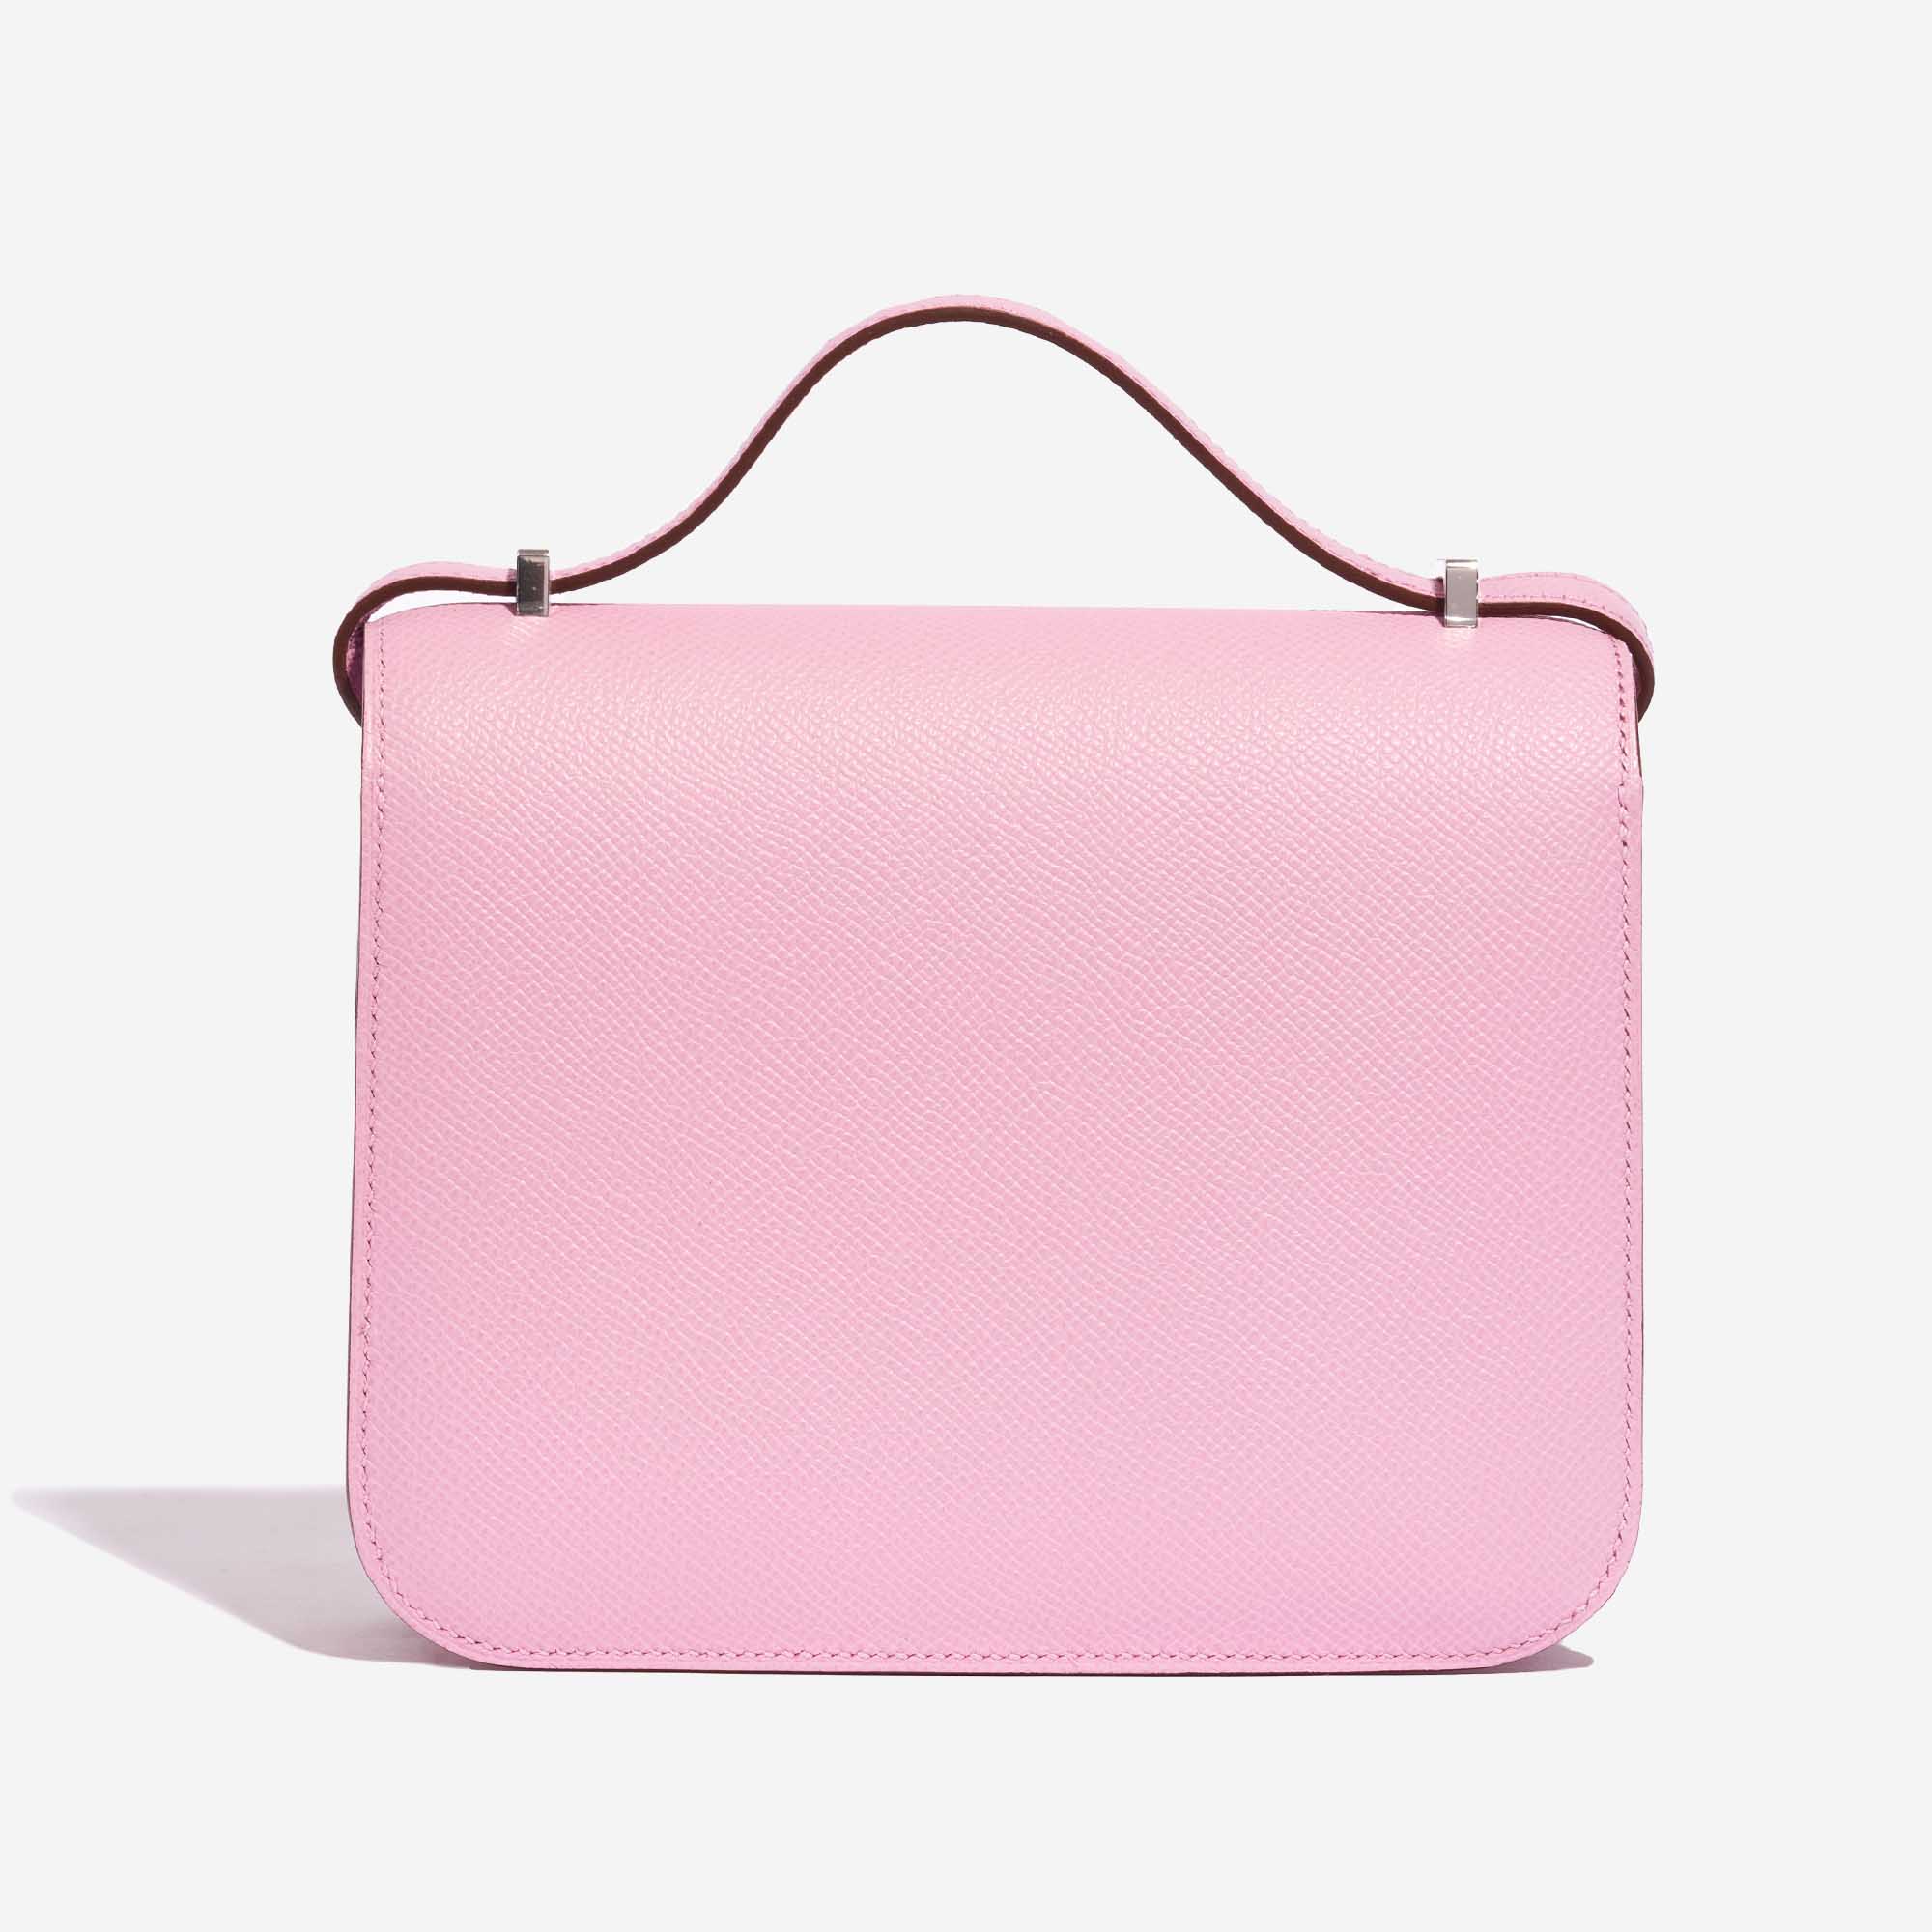 Pre-owned Hermès Tasche Constance 18 Epsom Mauve Sylvestre Pink Back | Verkaufen Sie Ihre Designer-Tasche auf Saclab.com